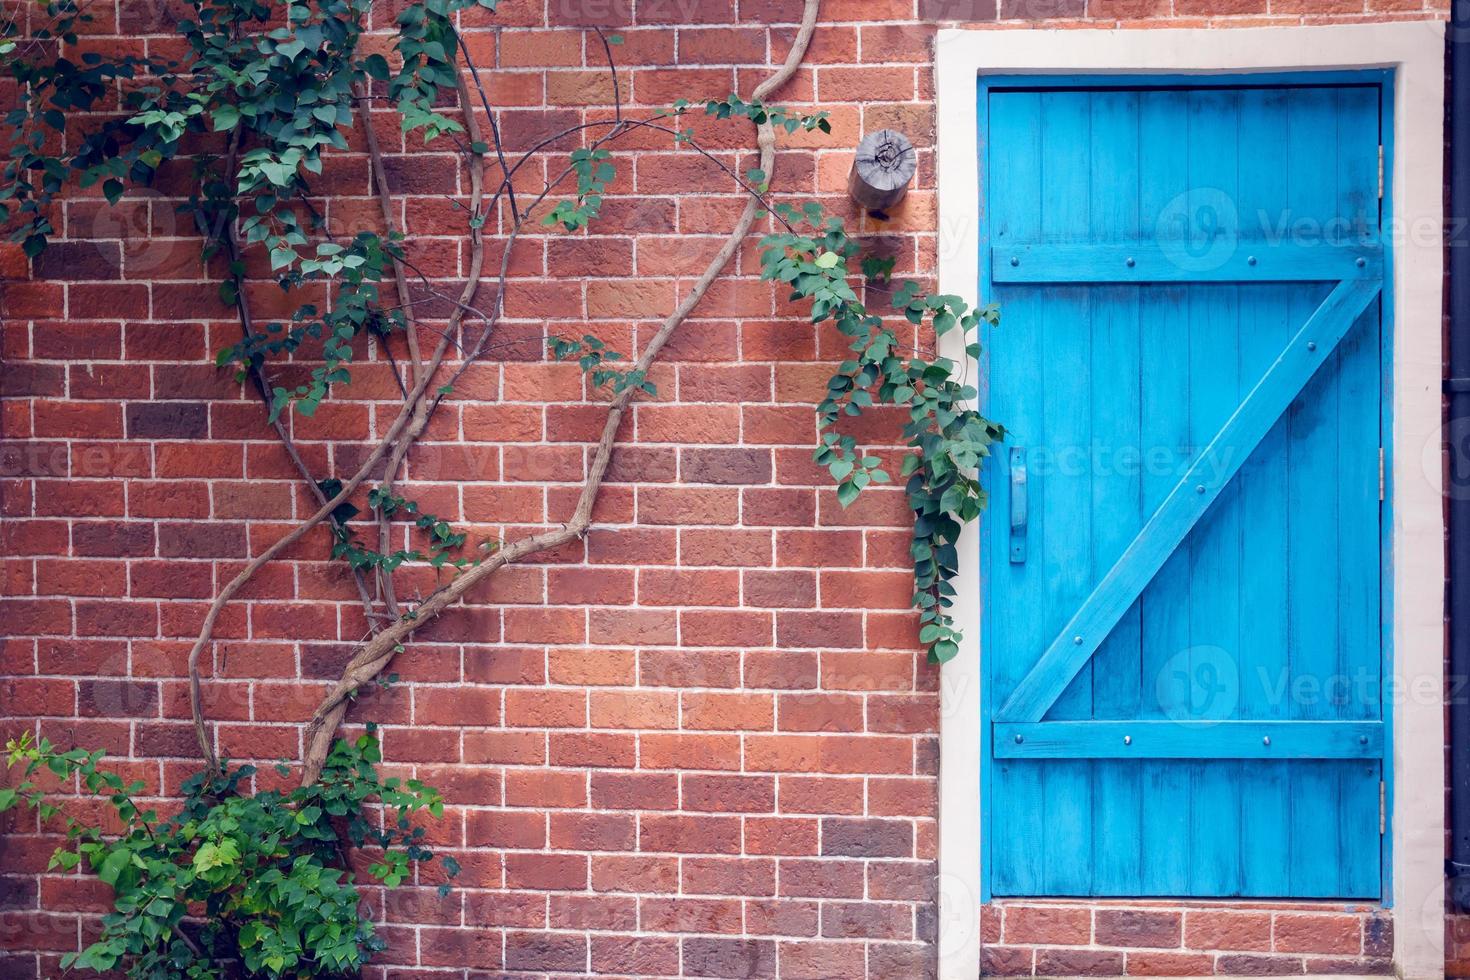 blu di legno porta su mattone muro, filtro effetto foto